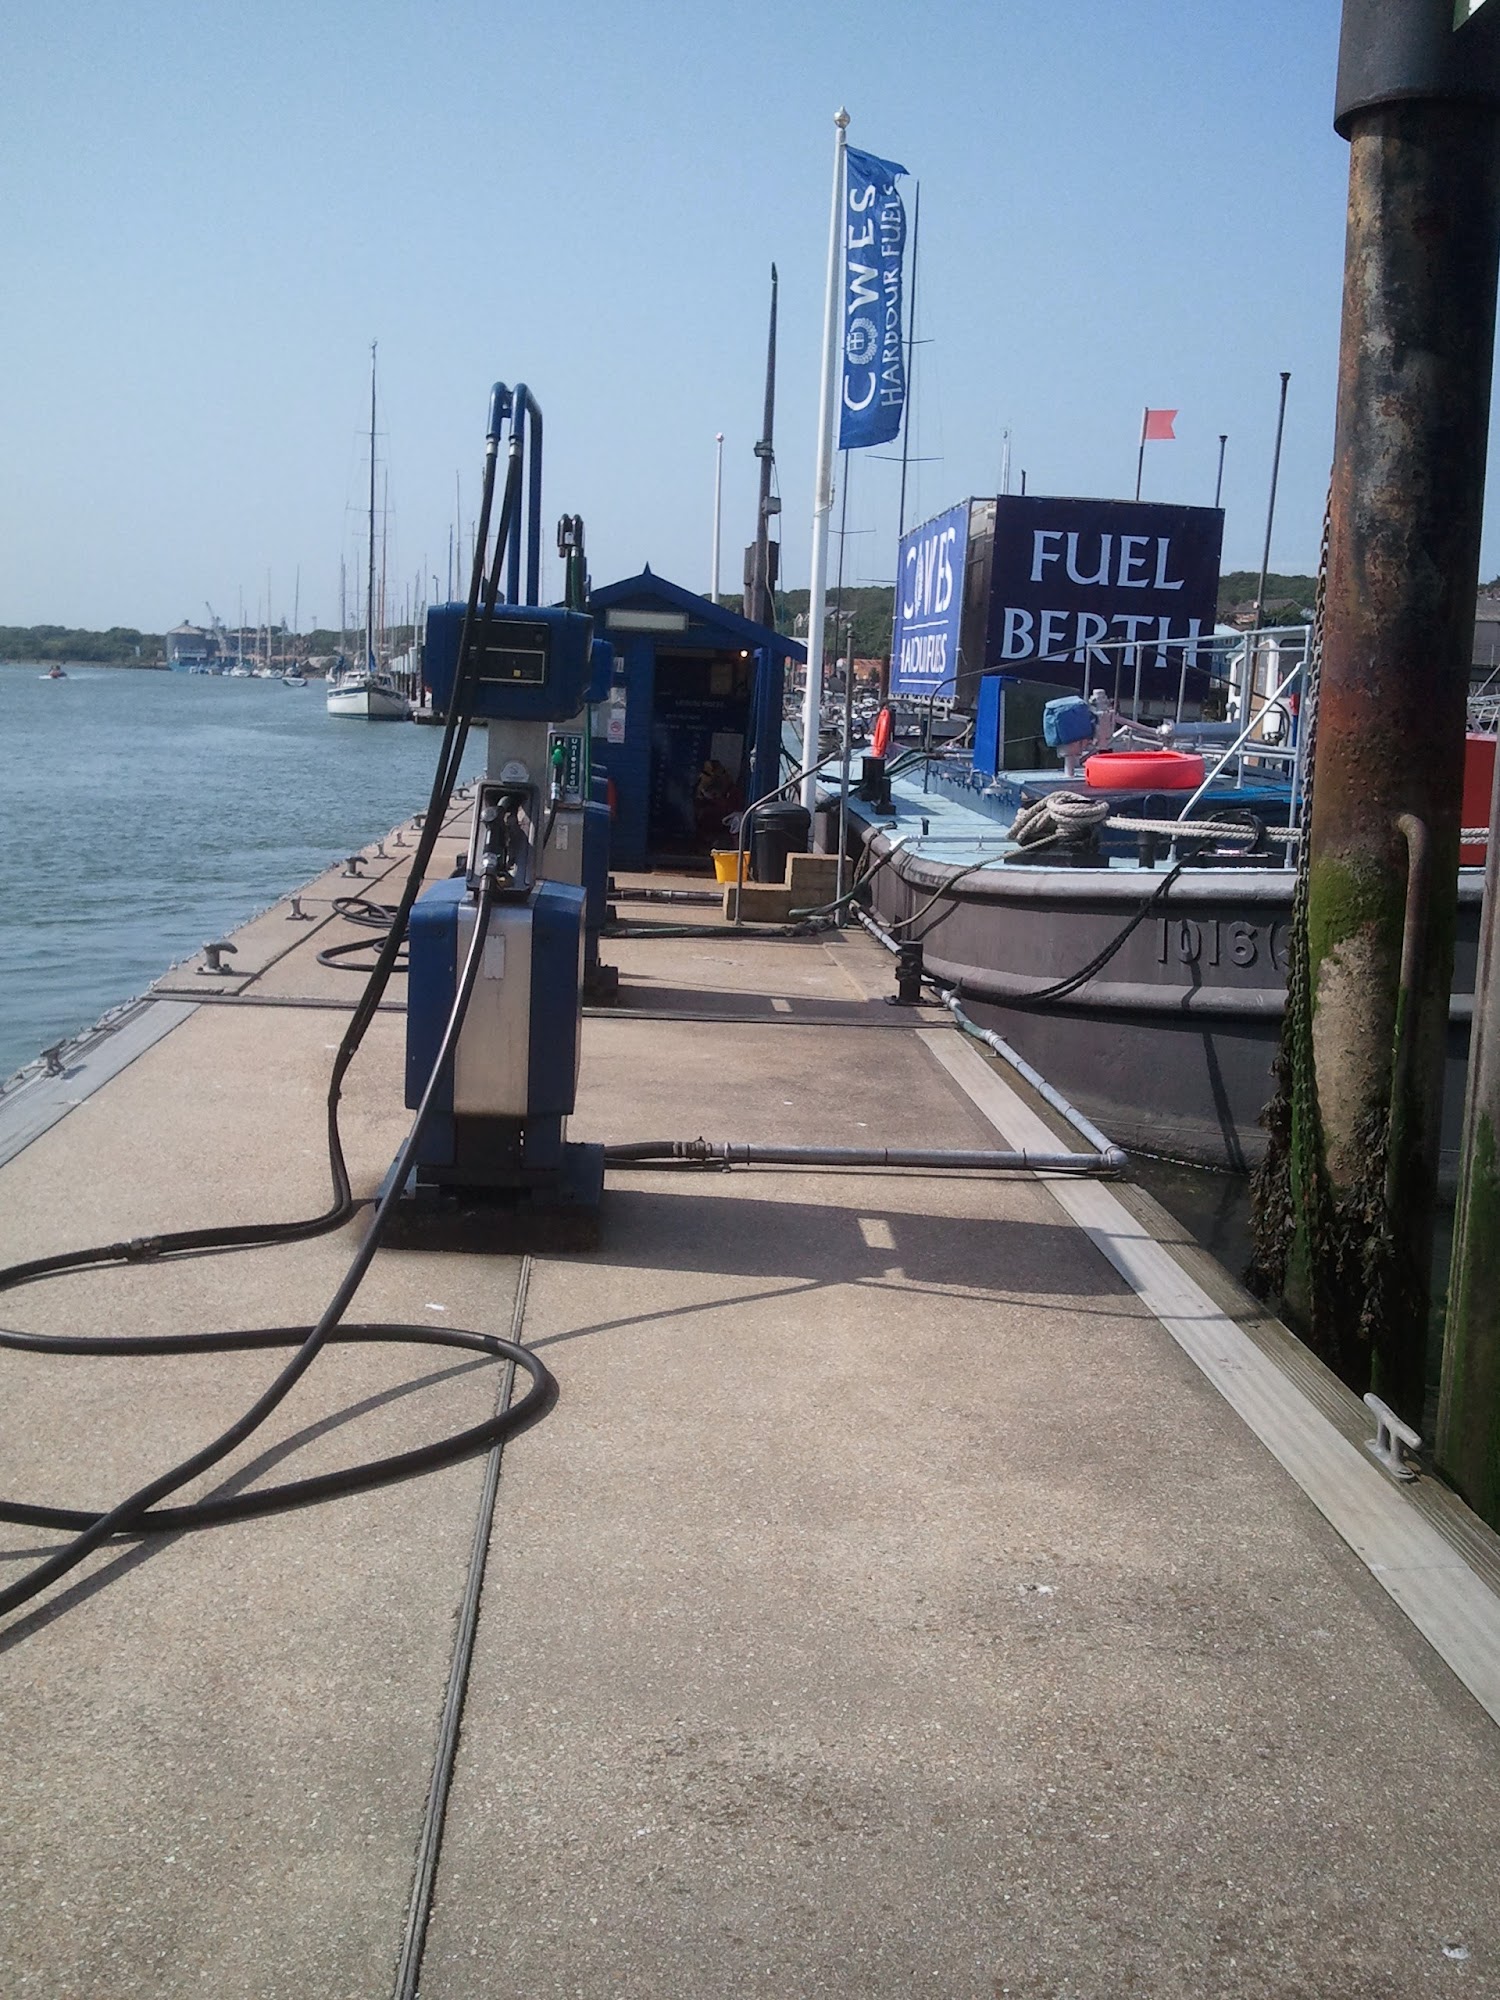 Cowes Harbour Fuels